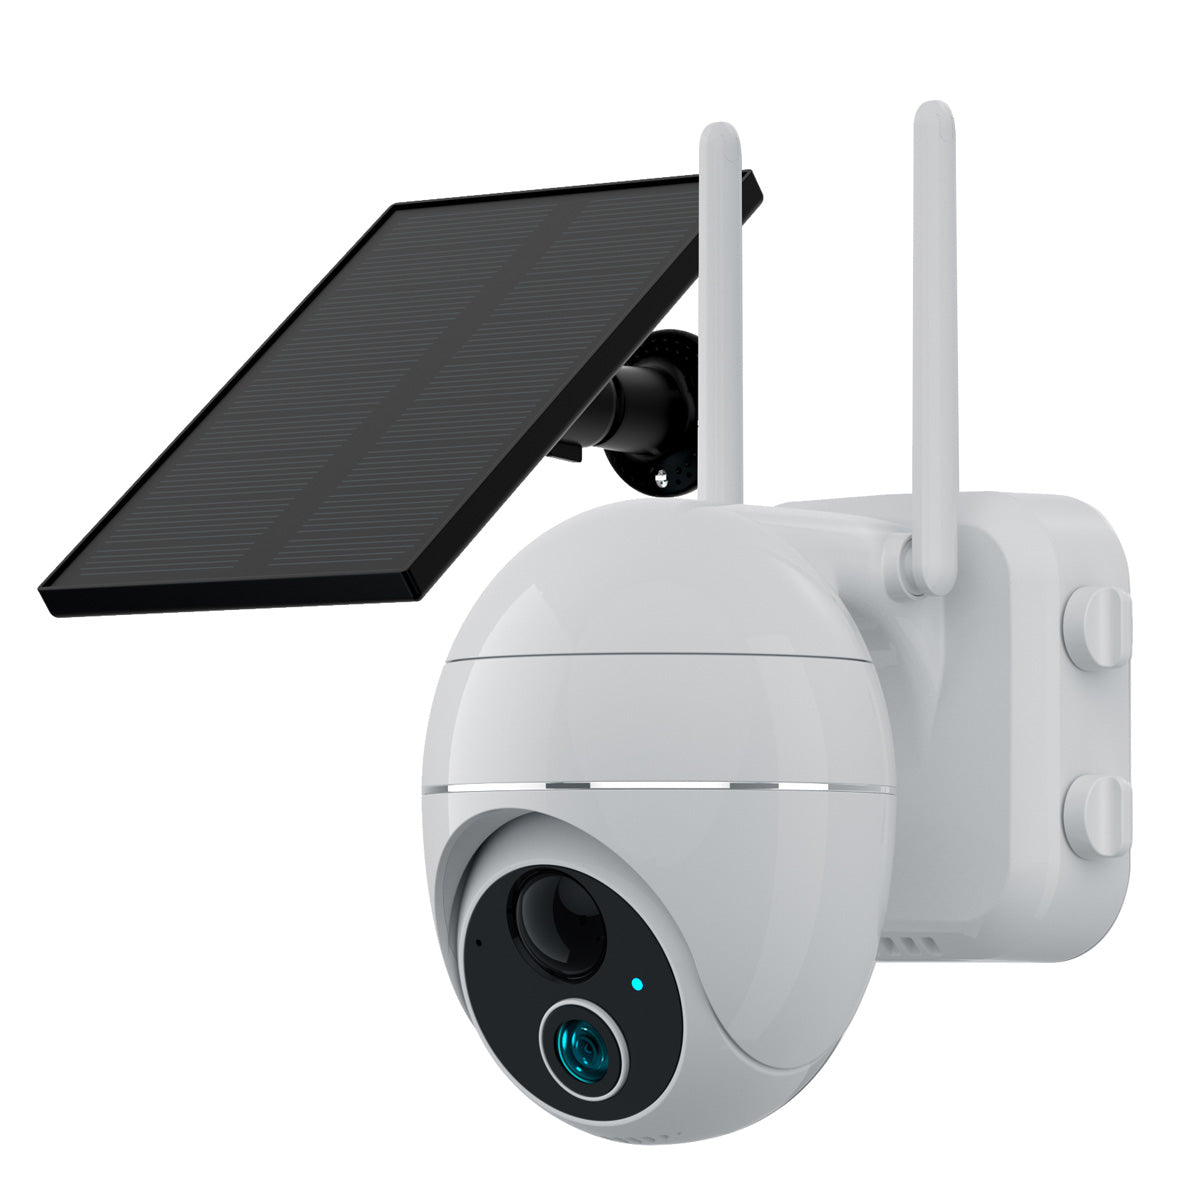 Campark AP50 1080p drahtlose PTZ-Überwachungskamera mit 5-fachem Digitalzoom